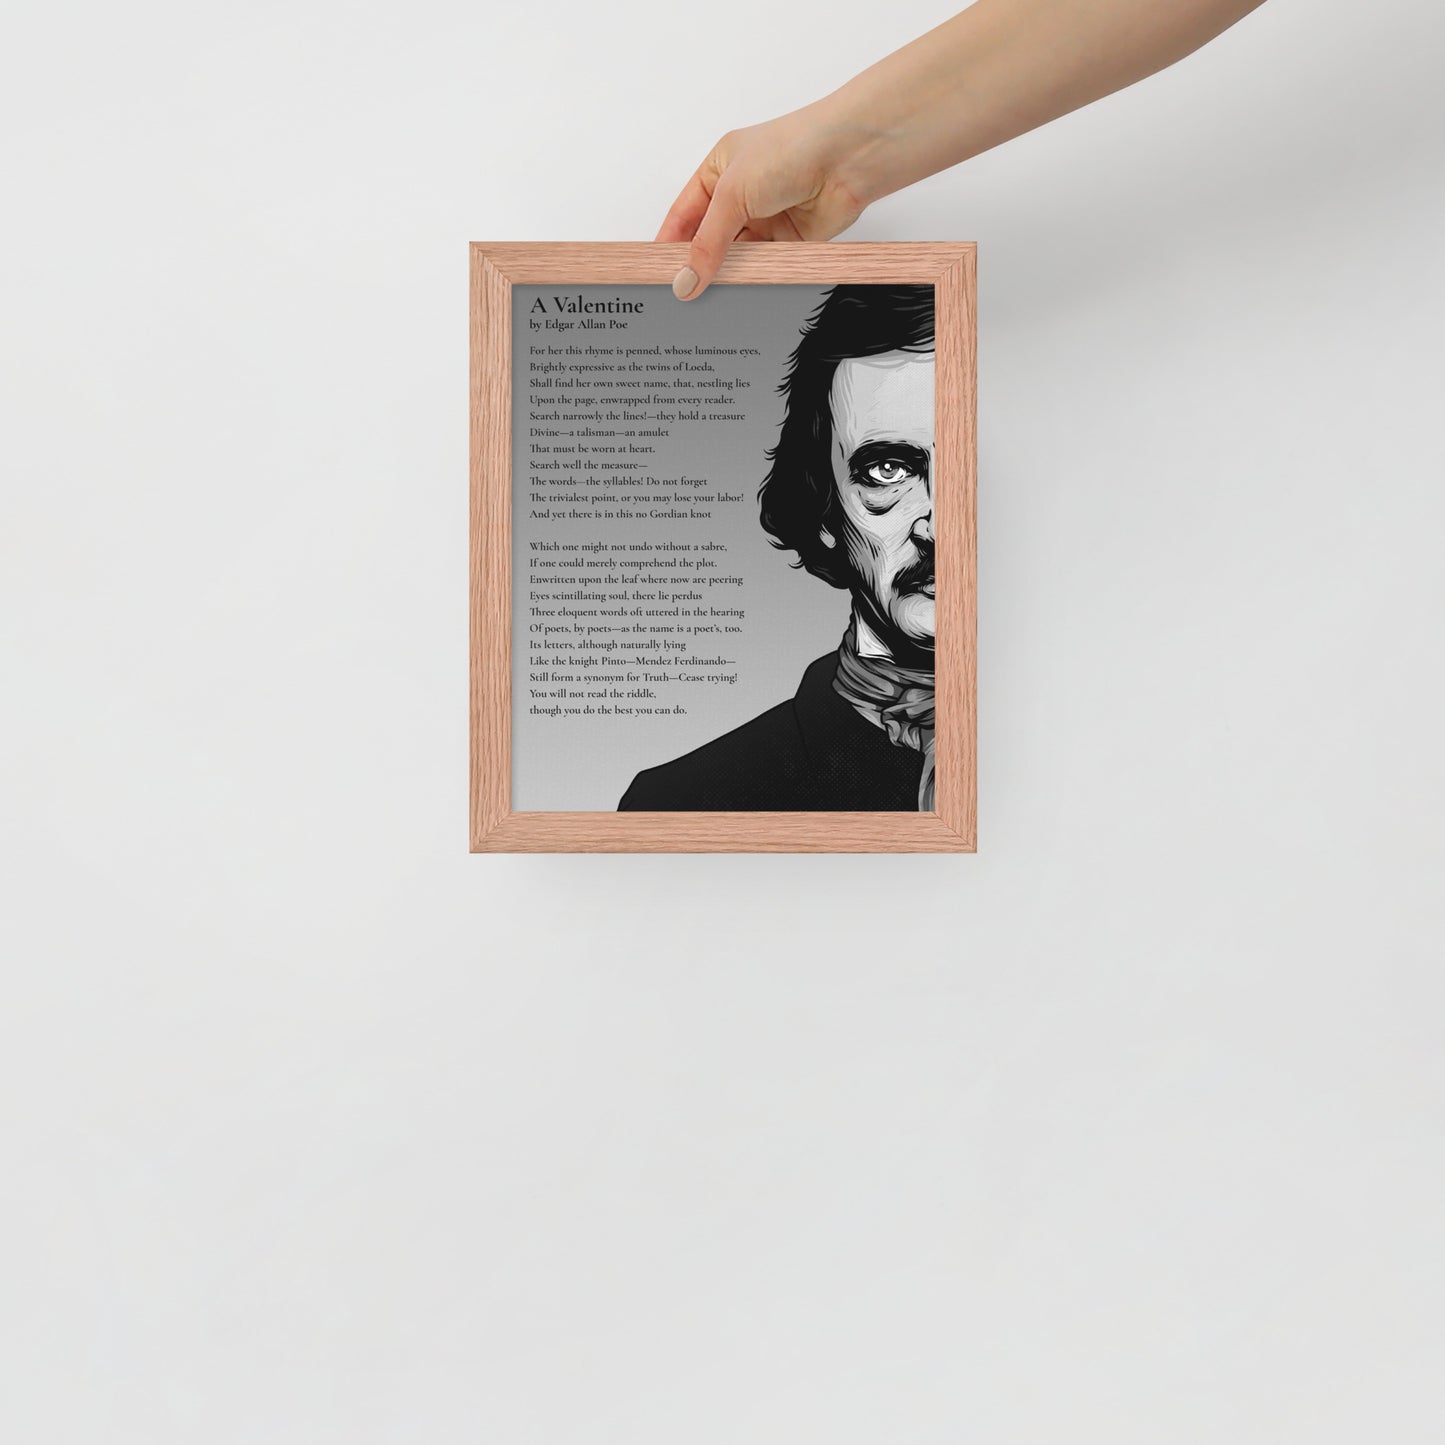 Edgar Allan Poe's 'A Valentine' Framed Matted Poster - 8 x 10 Red Oak Frame